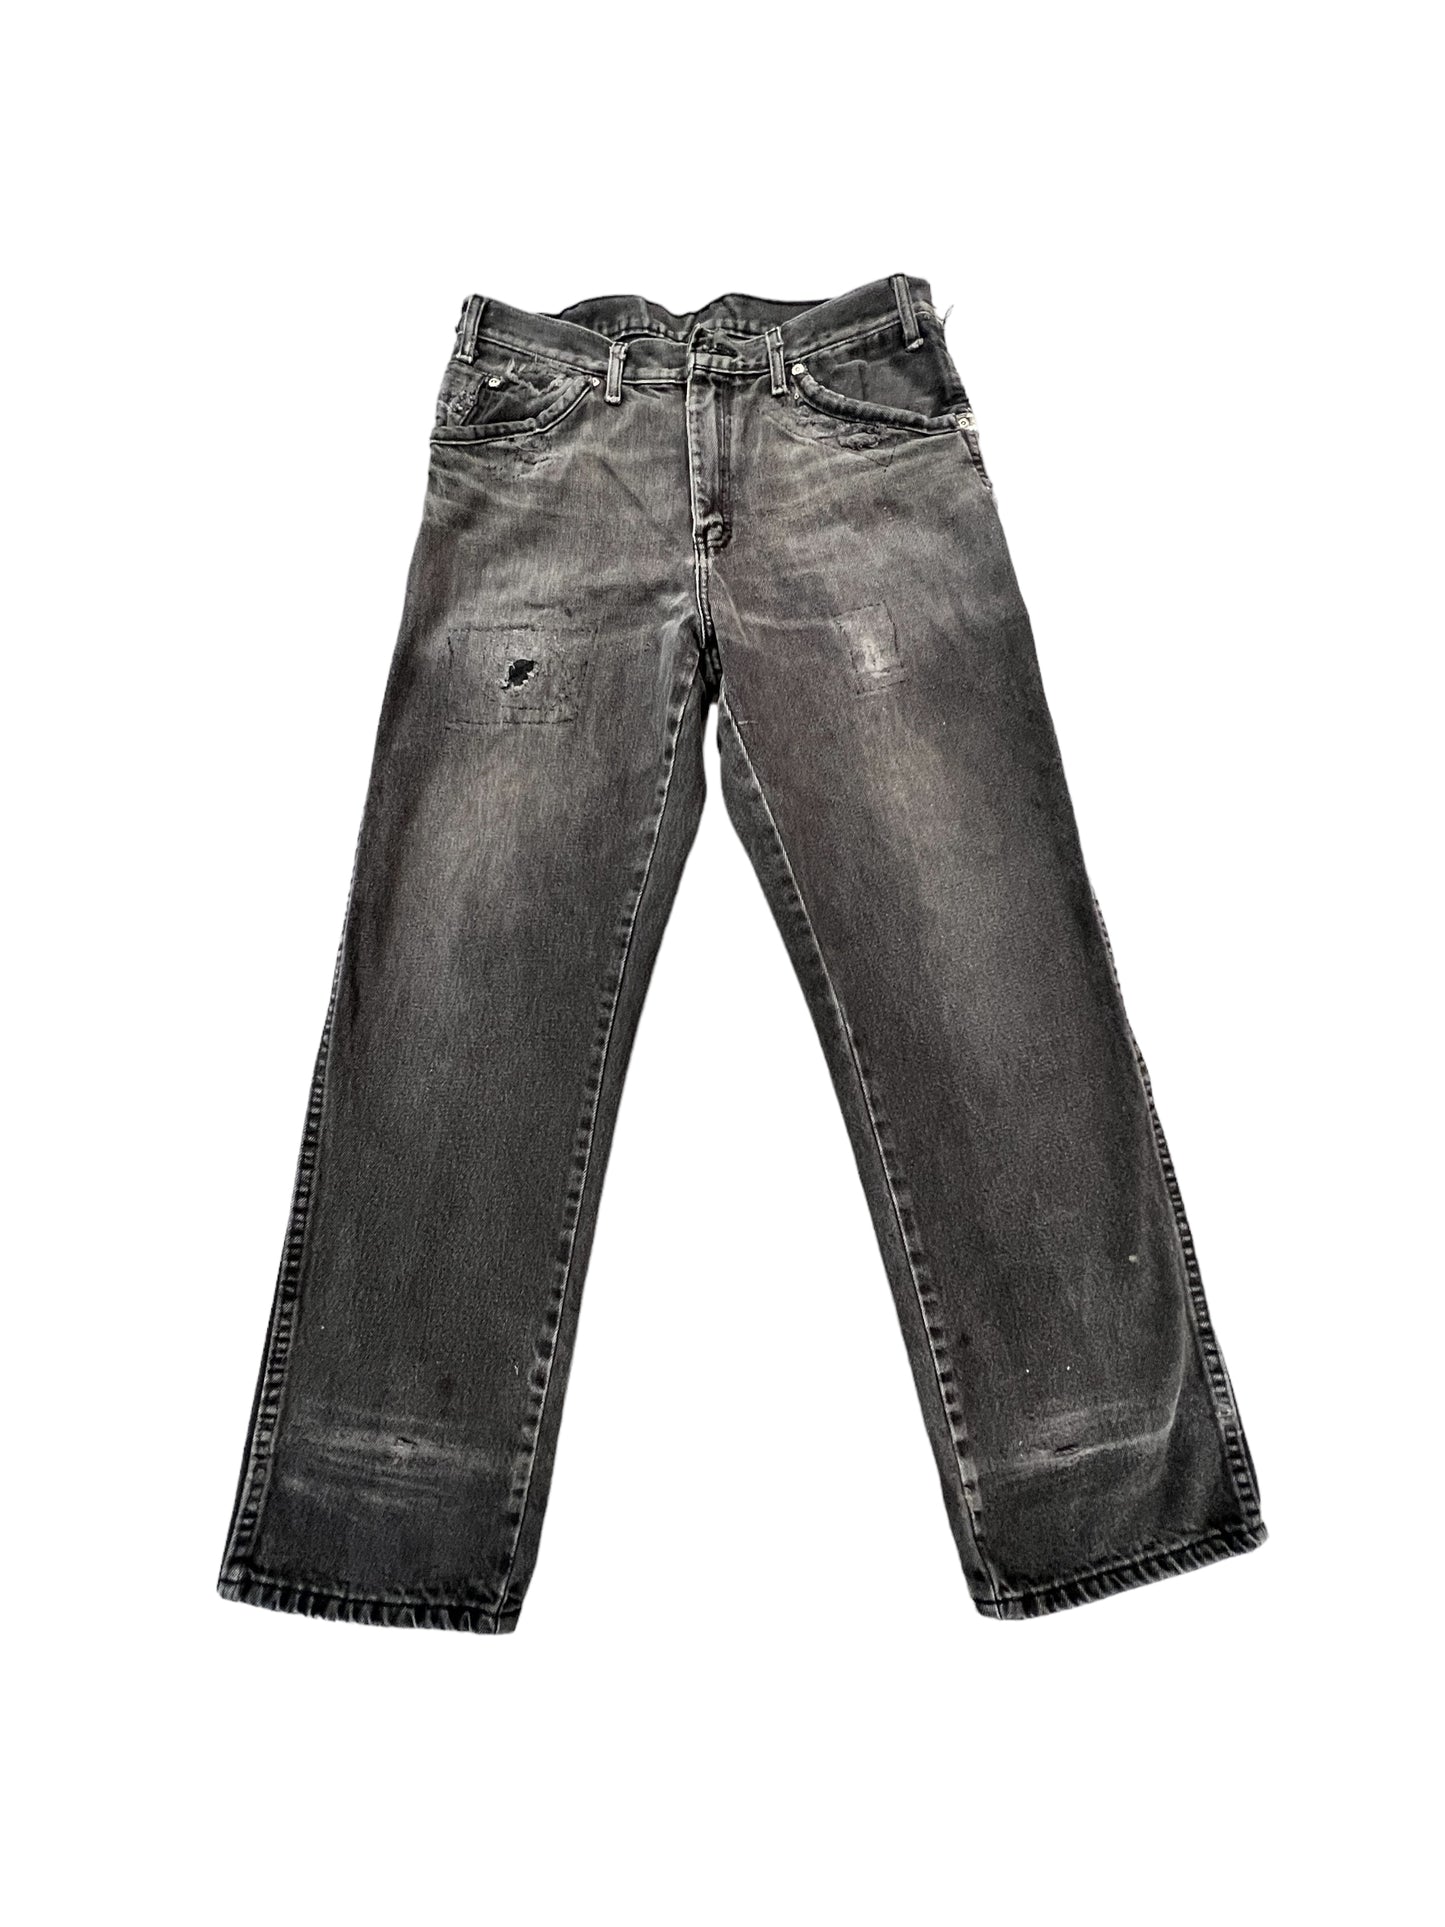 Vintage Dickies Pants 32x30